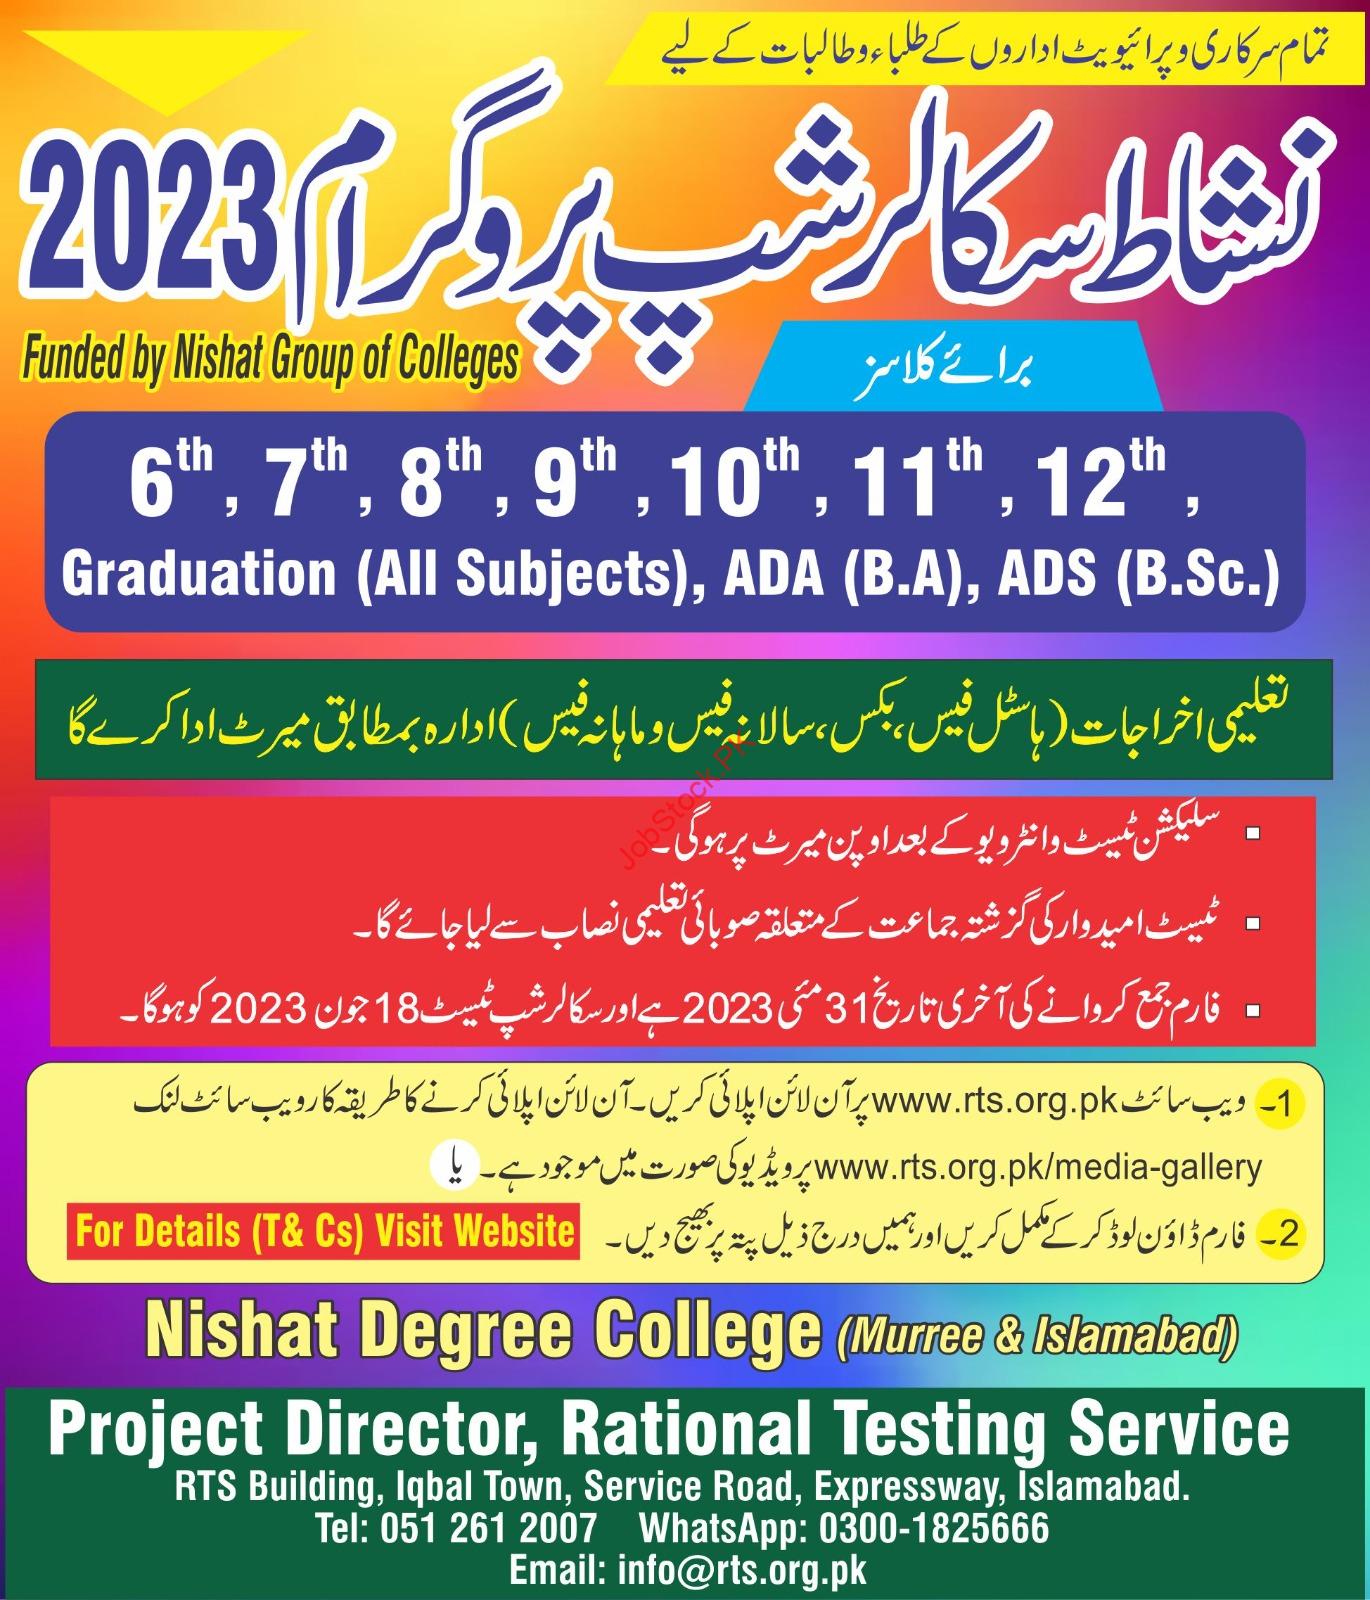 Nishat Scholarship Program 2023